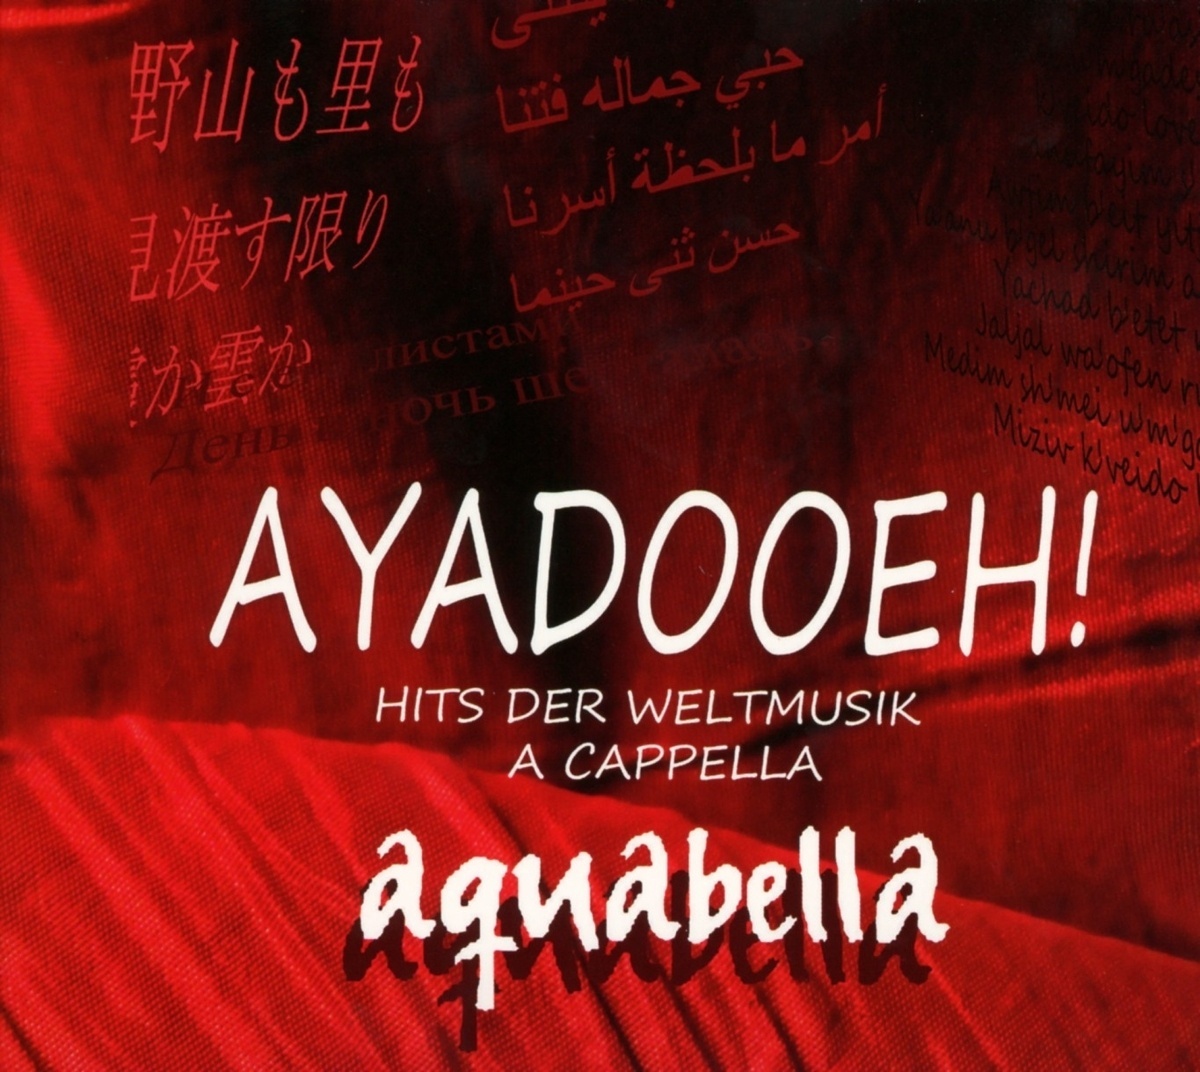 Ayadooeh! - Hits Der Weltmusik A Cappella - Aquabella. (CD)